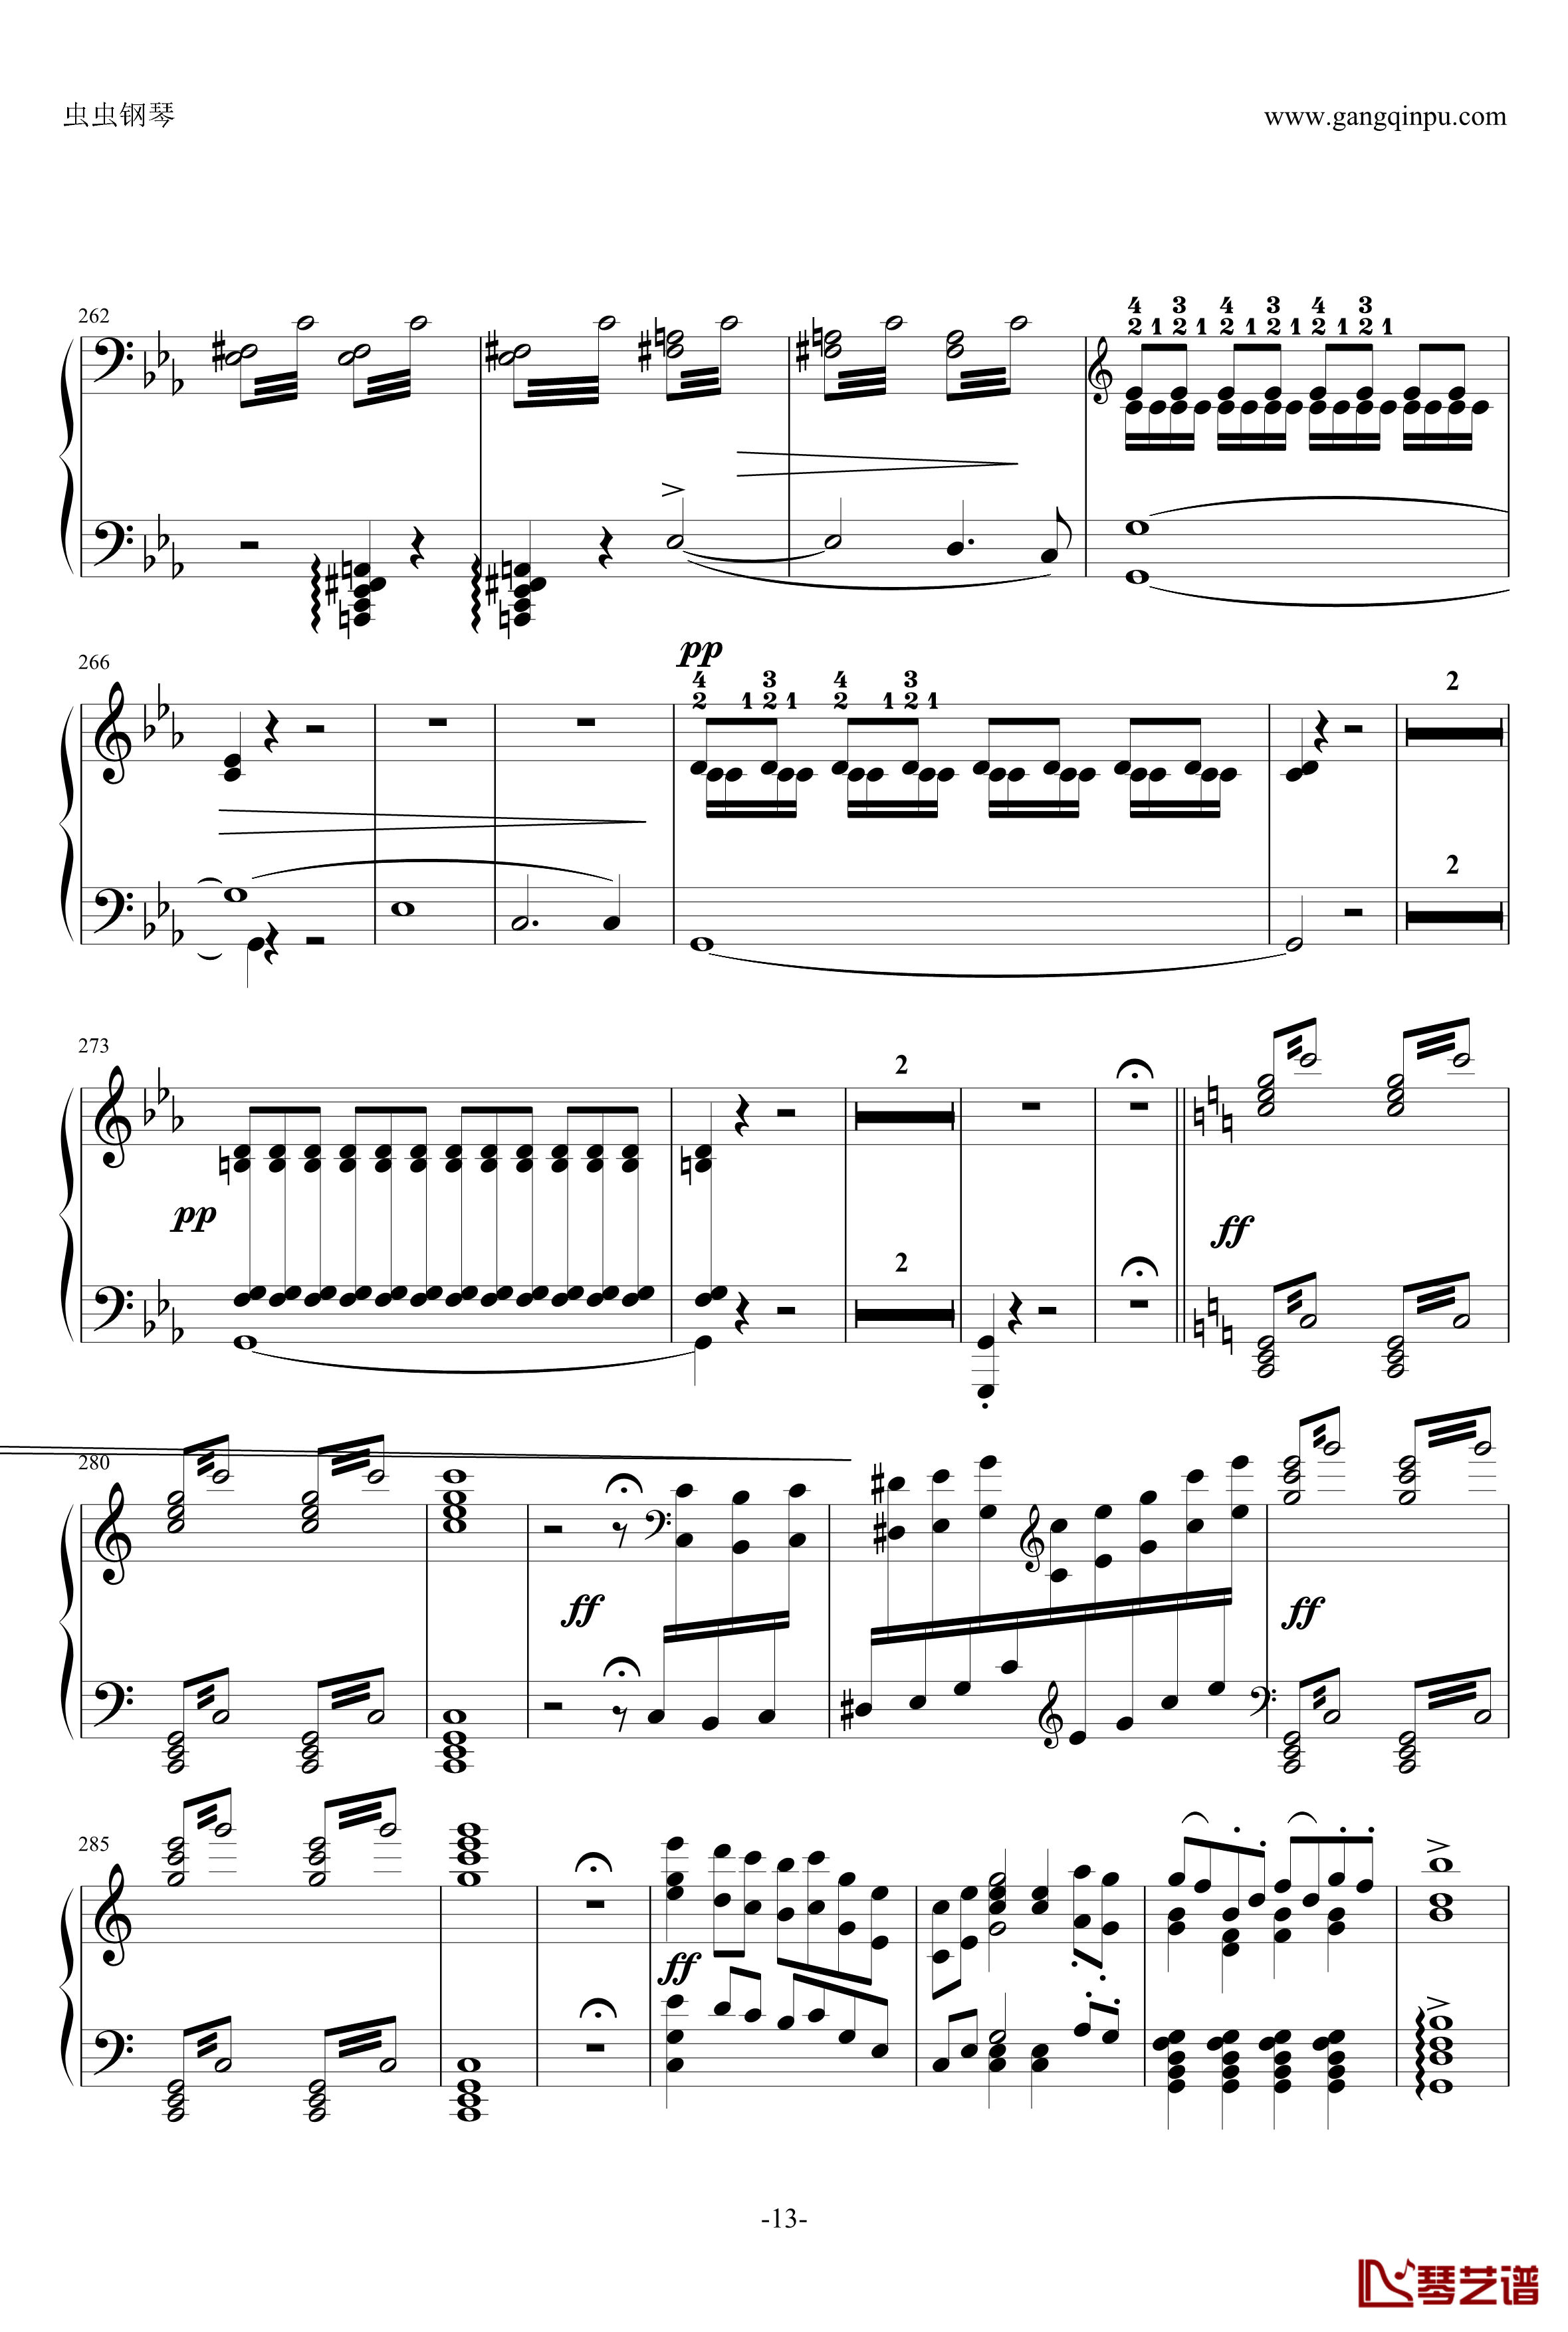 自由射手序曲钢琴谱-韦伯-李斯特13